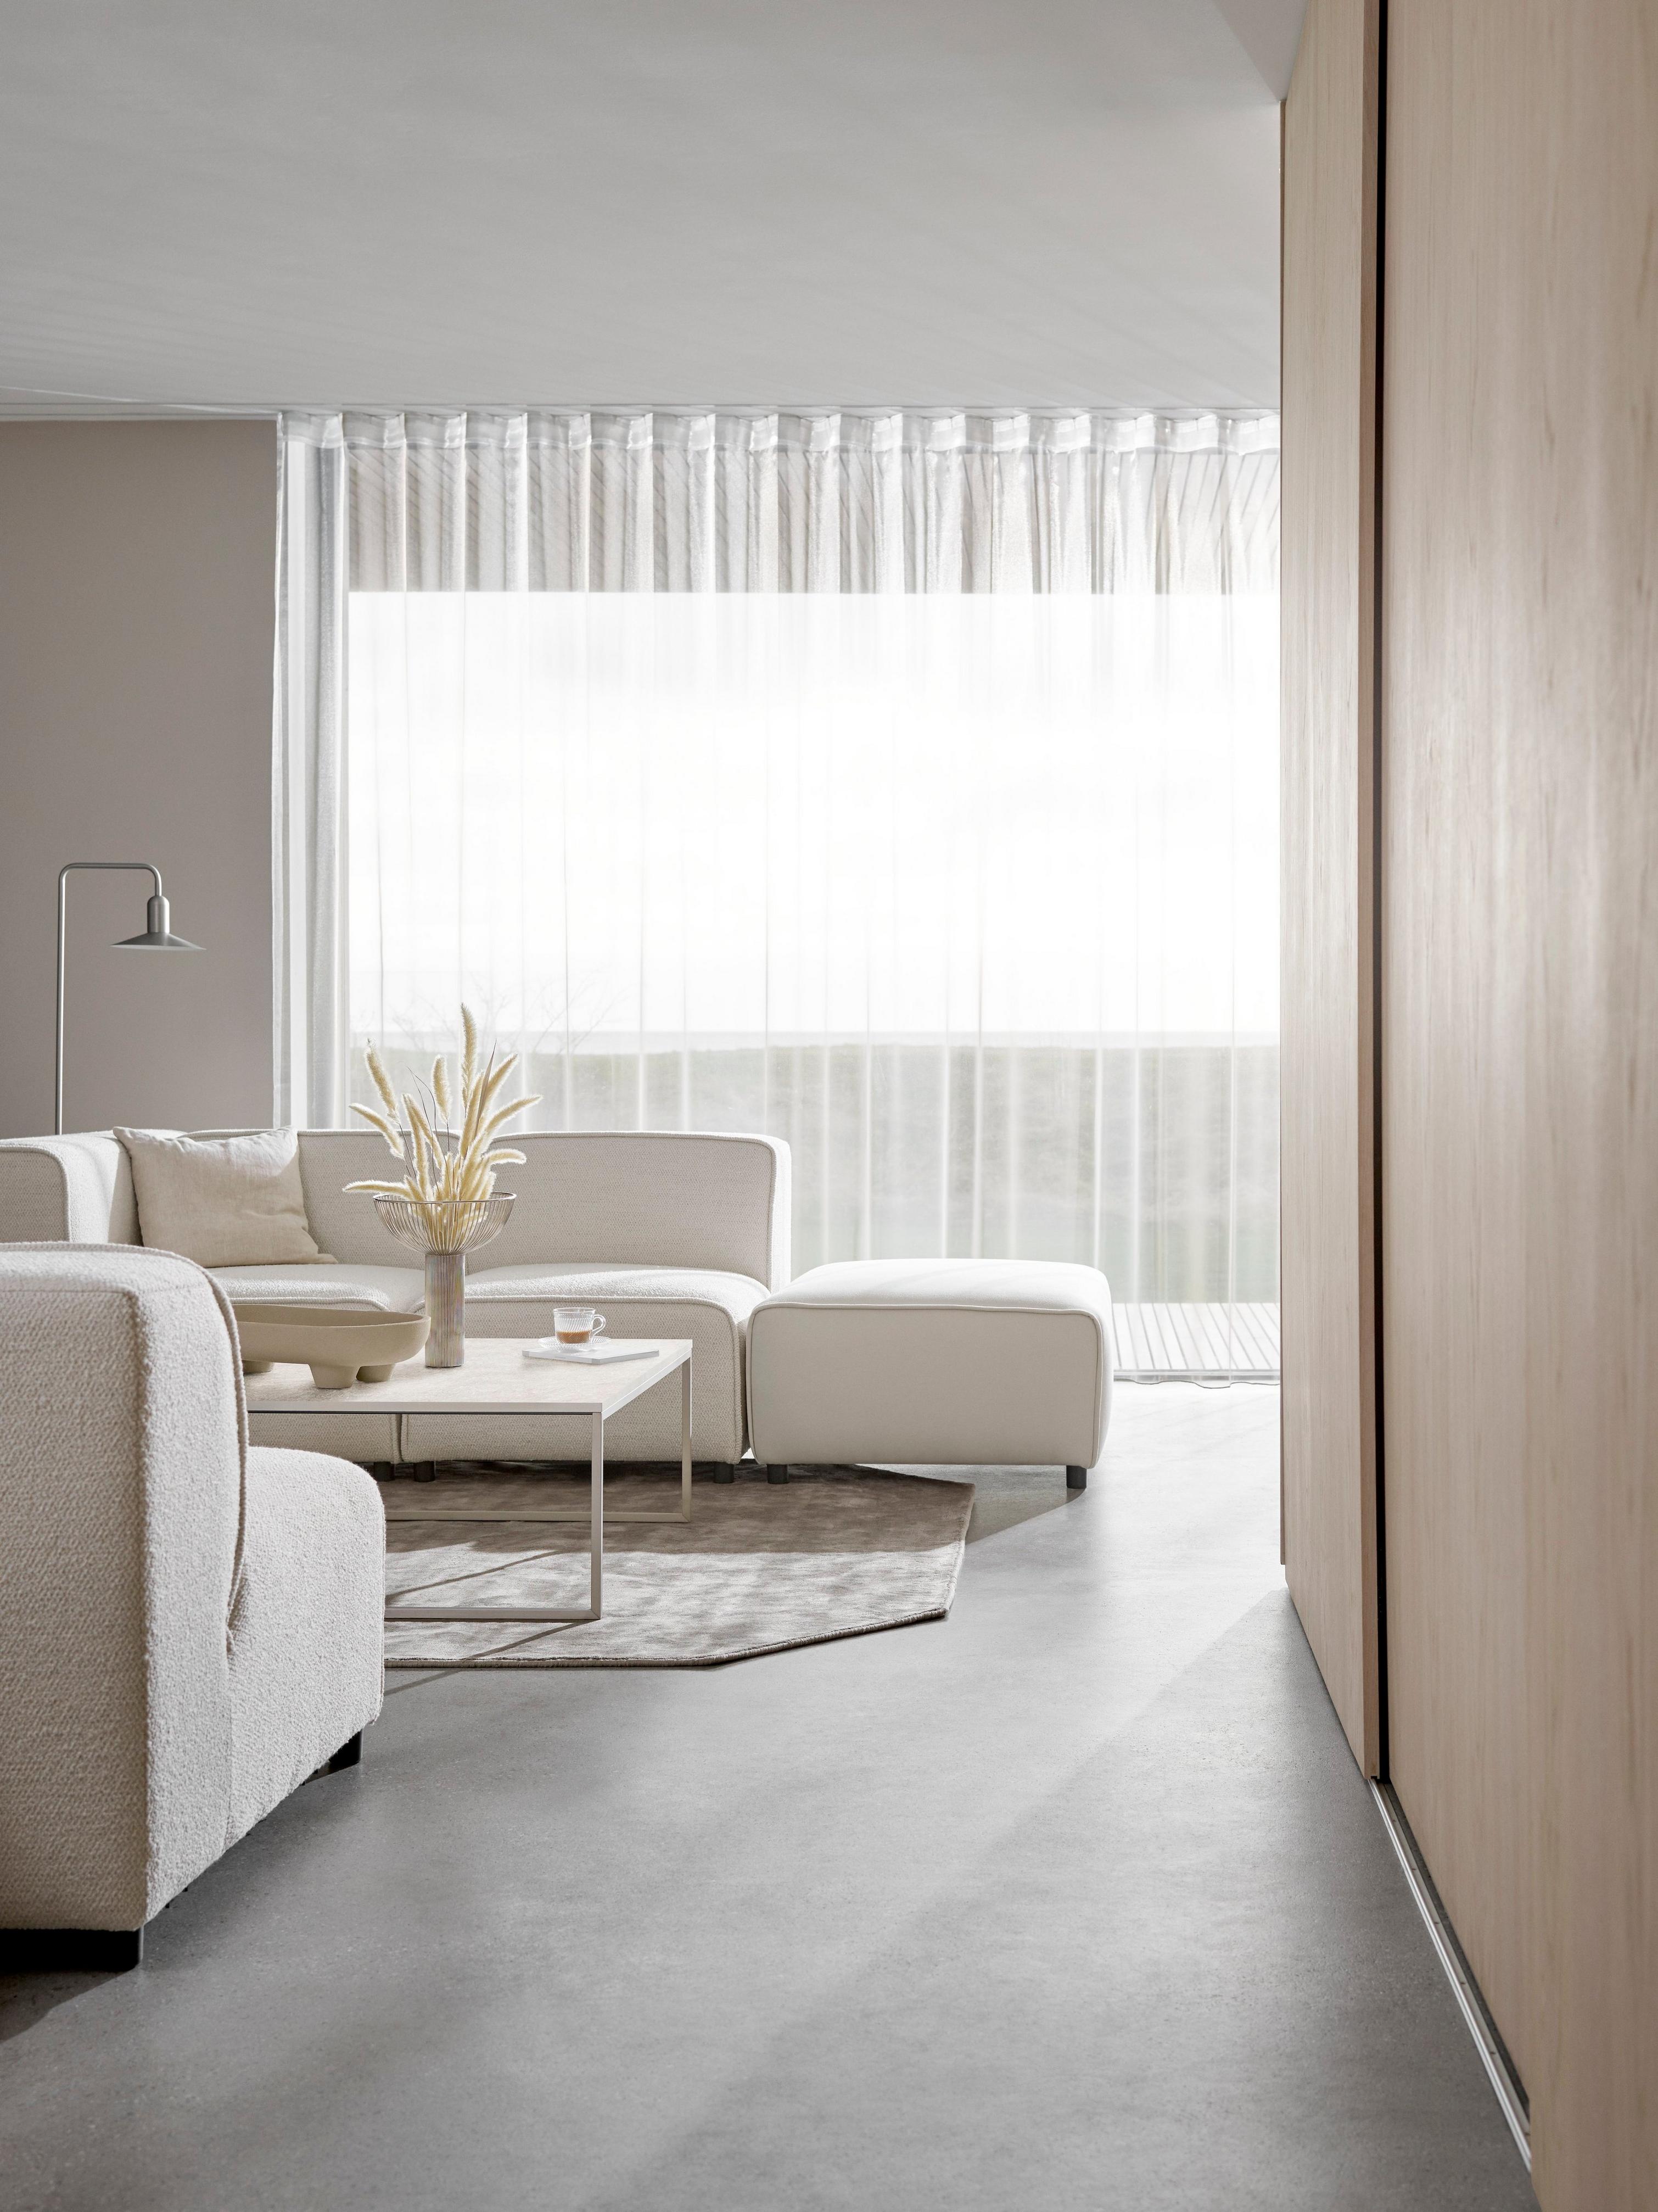 奶油色 Carmo 沙发打造极简主义起居室风格，光线透过薄纱窗帘照射进来。